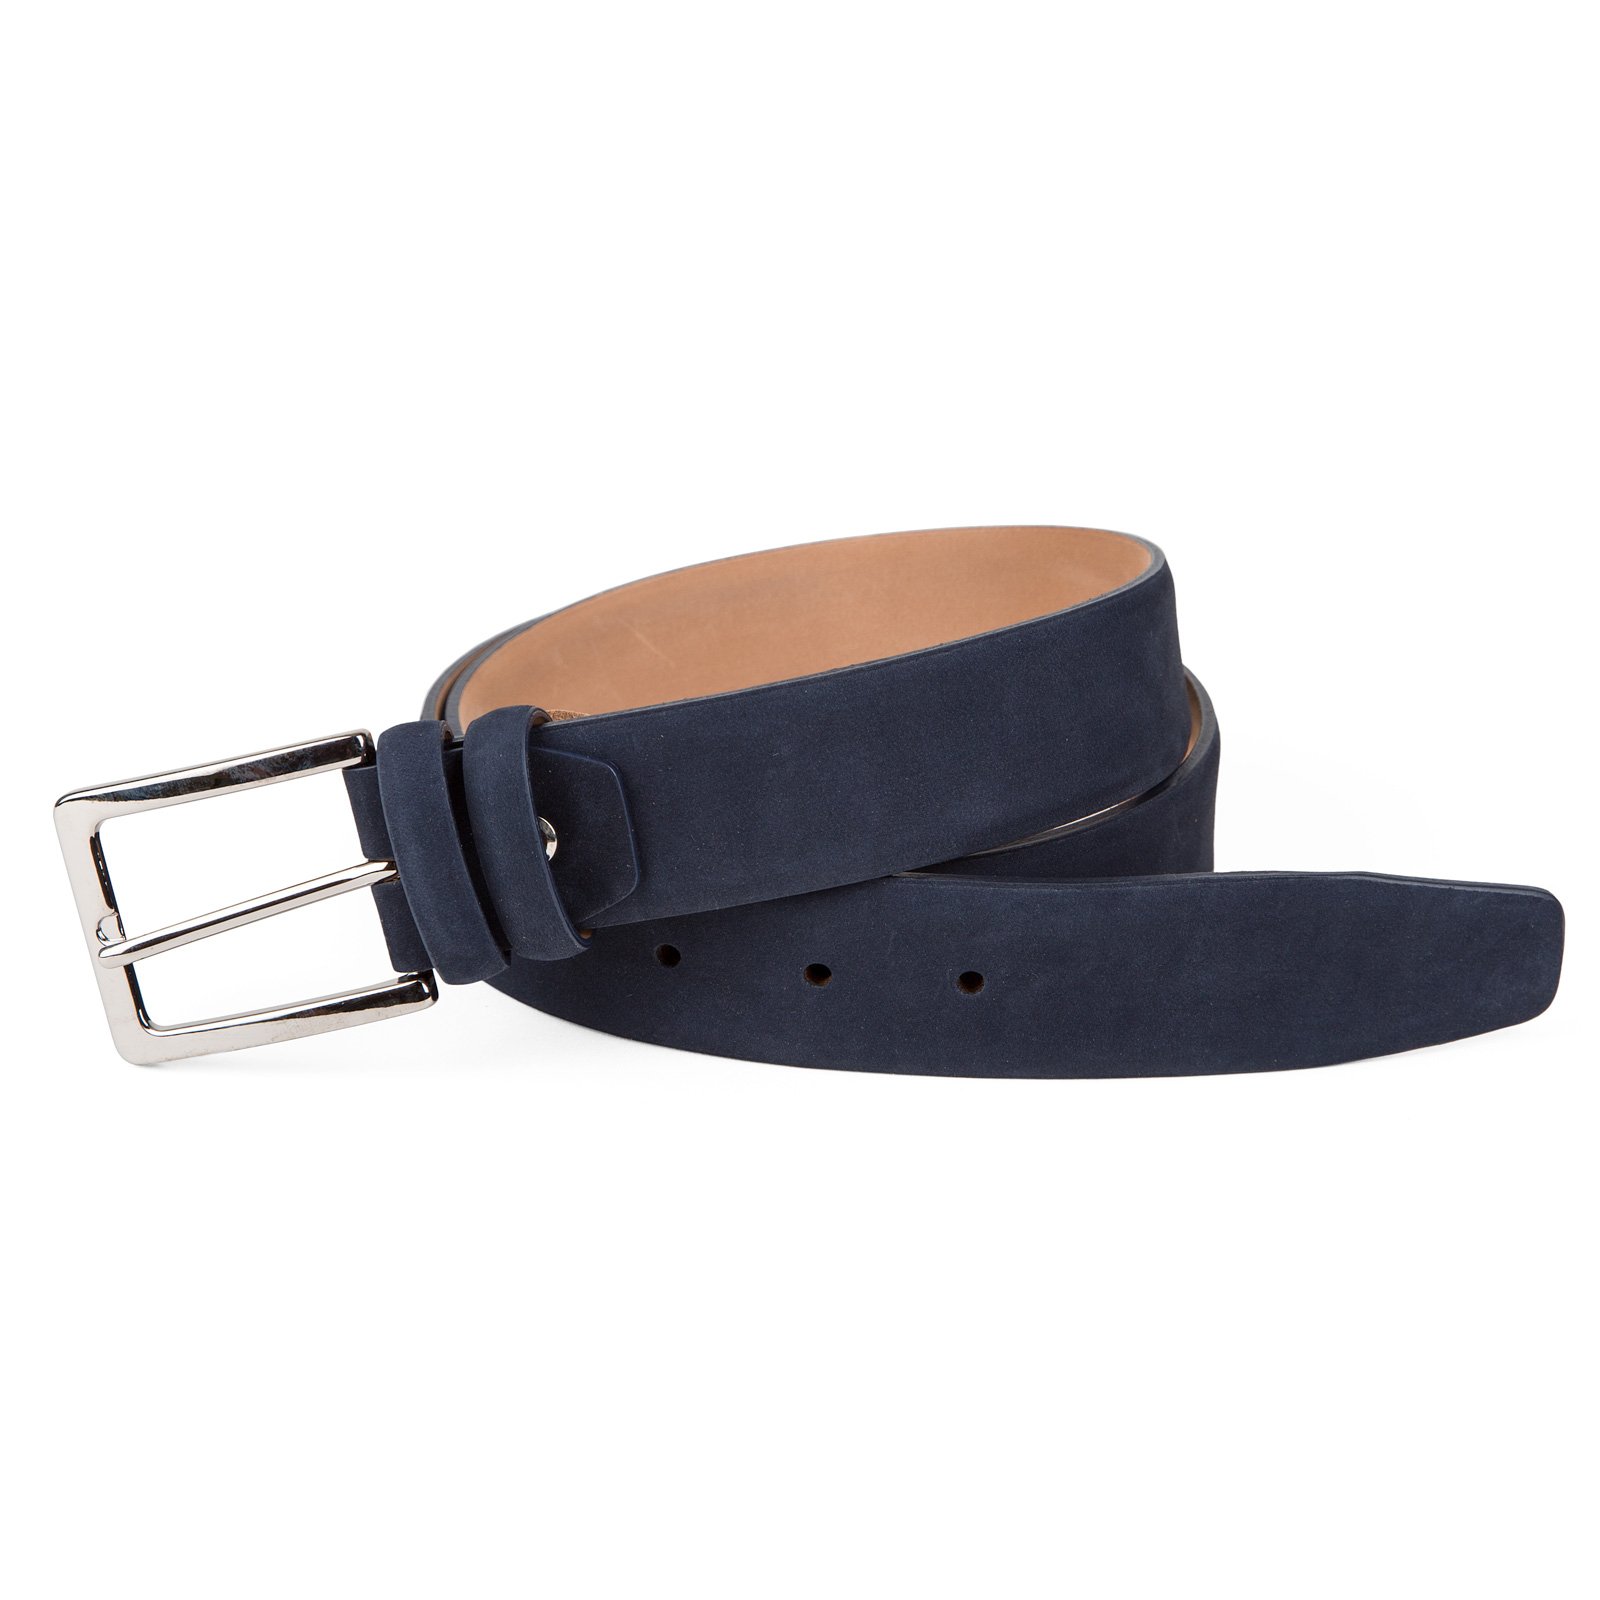 Luxury Nubuck Leather Dress Belt - Accessories-Belts : Fifth Avenue ...